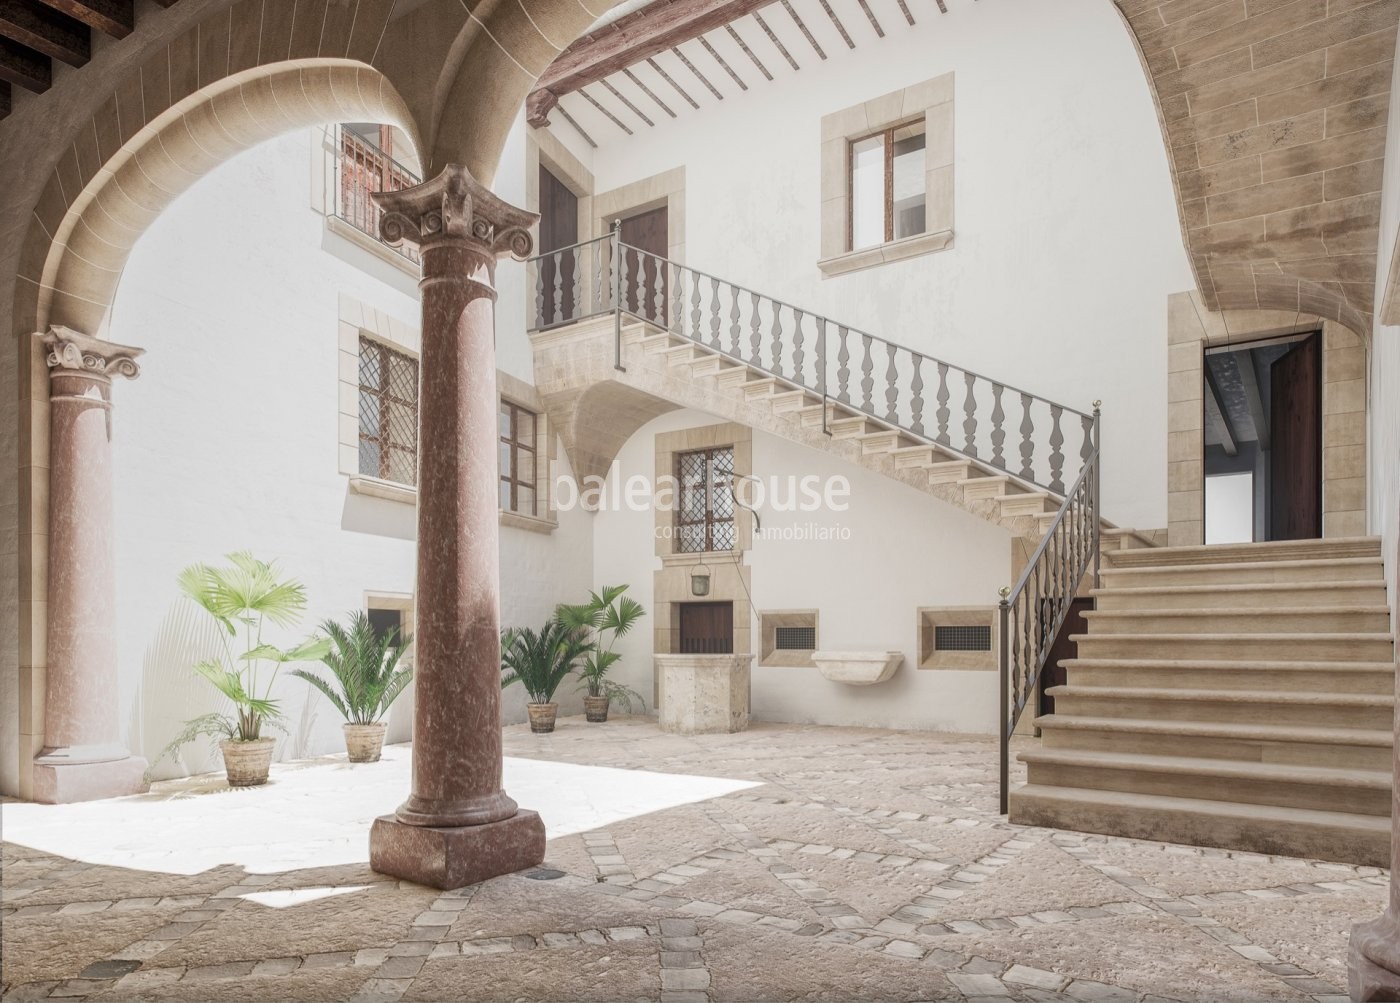 Elegante Maisonette-Wohnung in einem historischen Palast in der Altstadt von Palma.